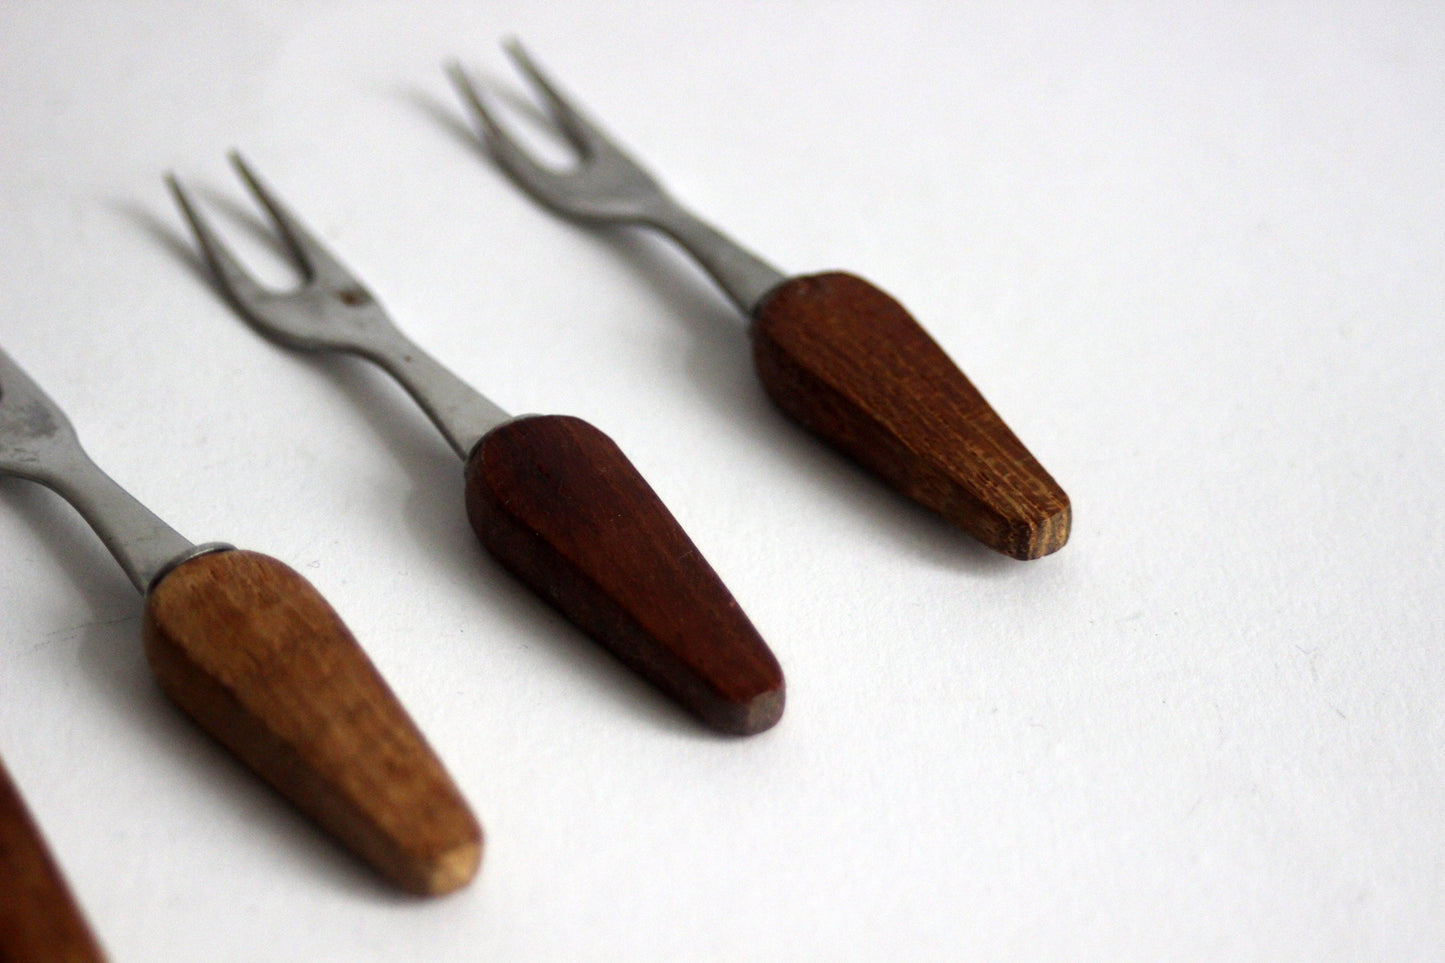 Vintage set of 6 forks with base in teak wood. Scandinavian Mid-Century design.